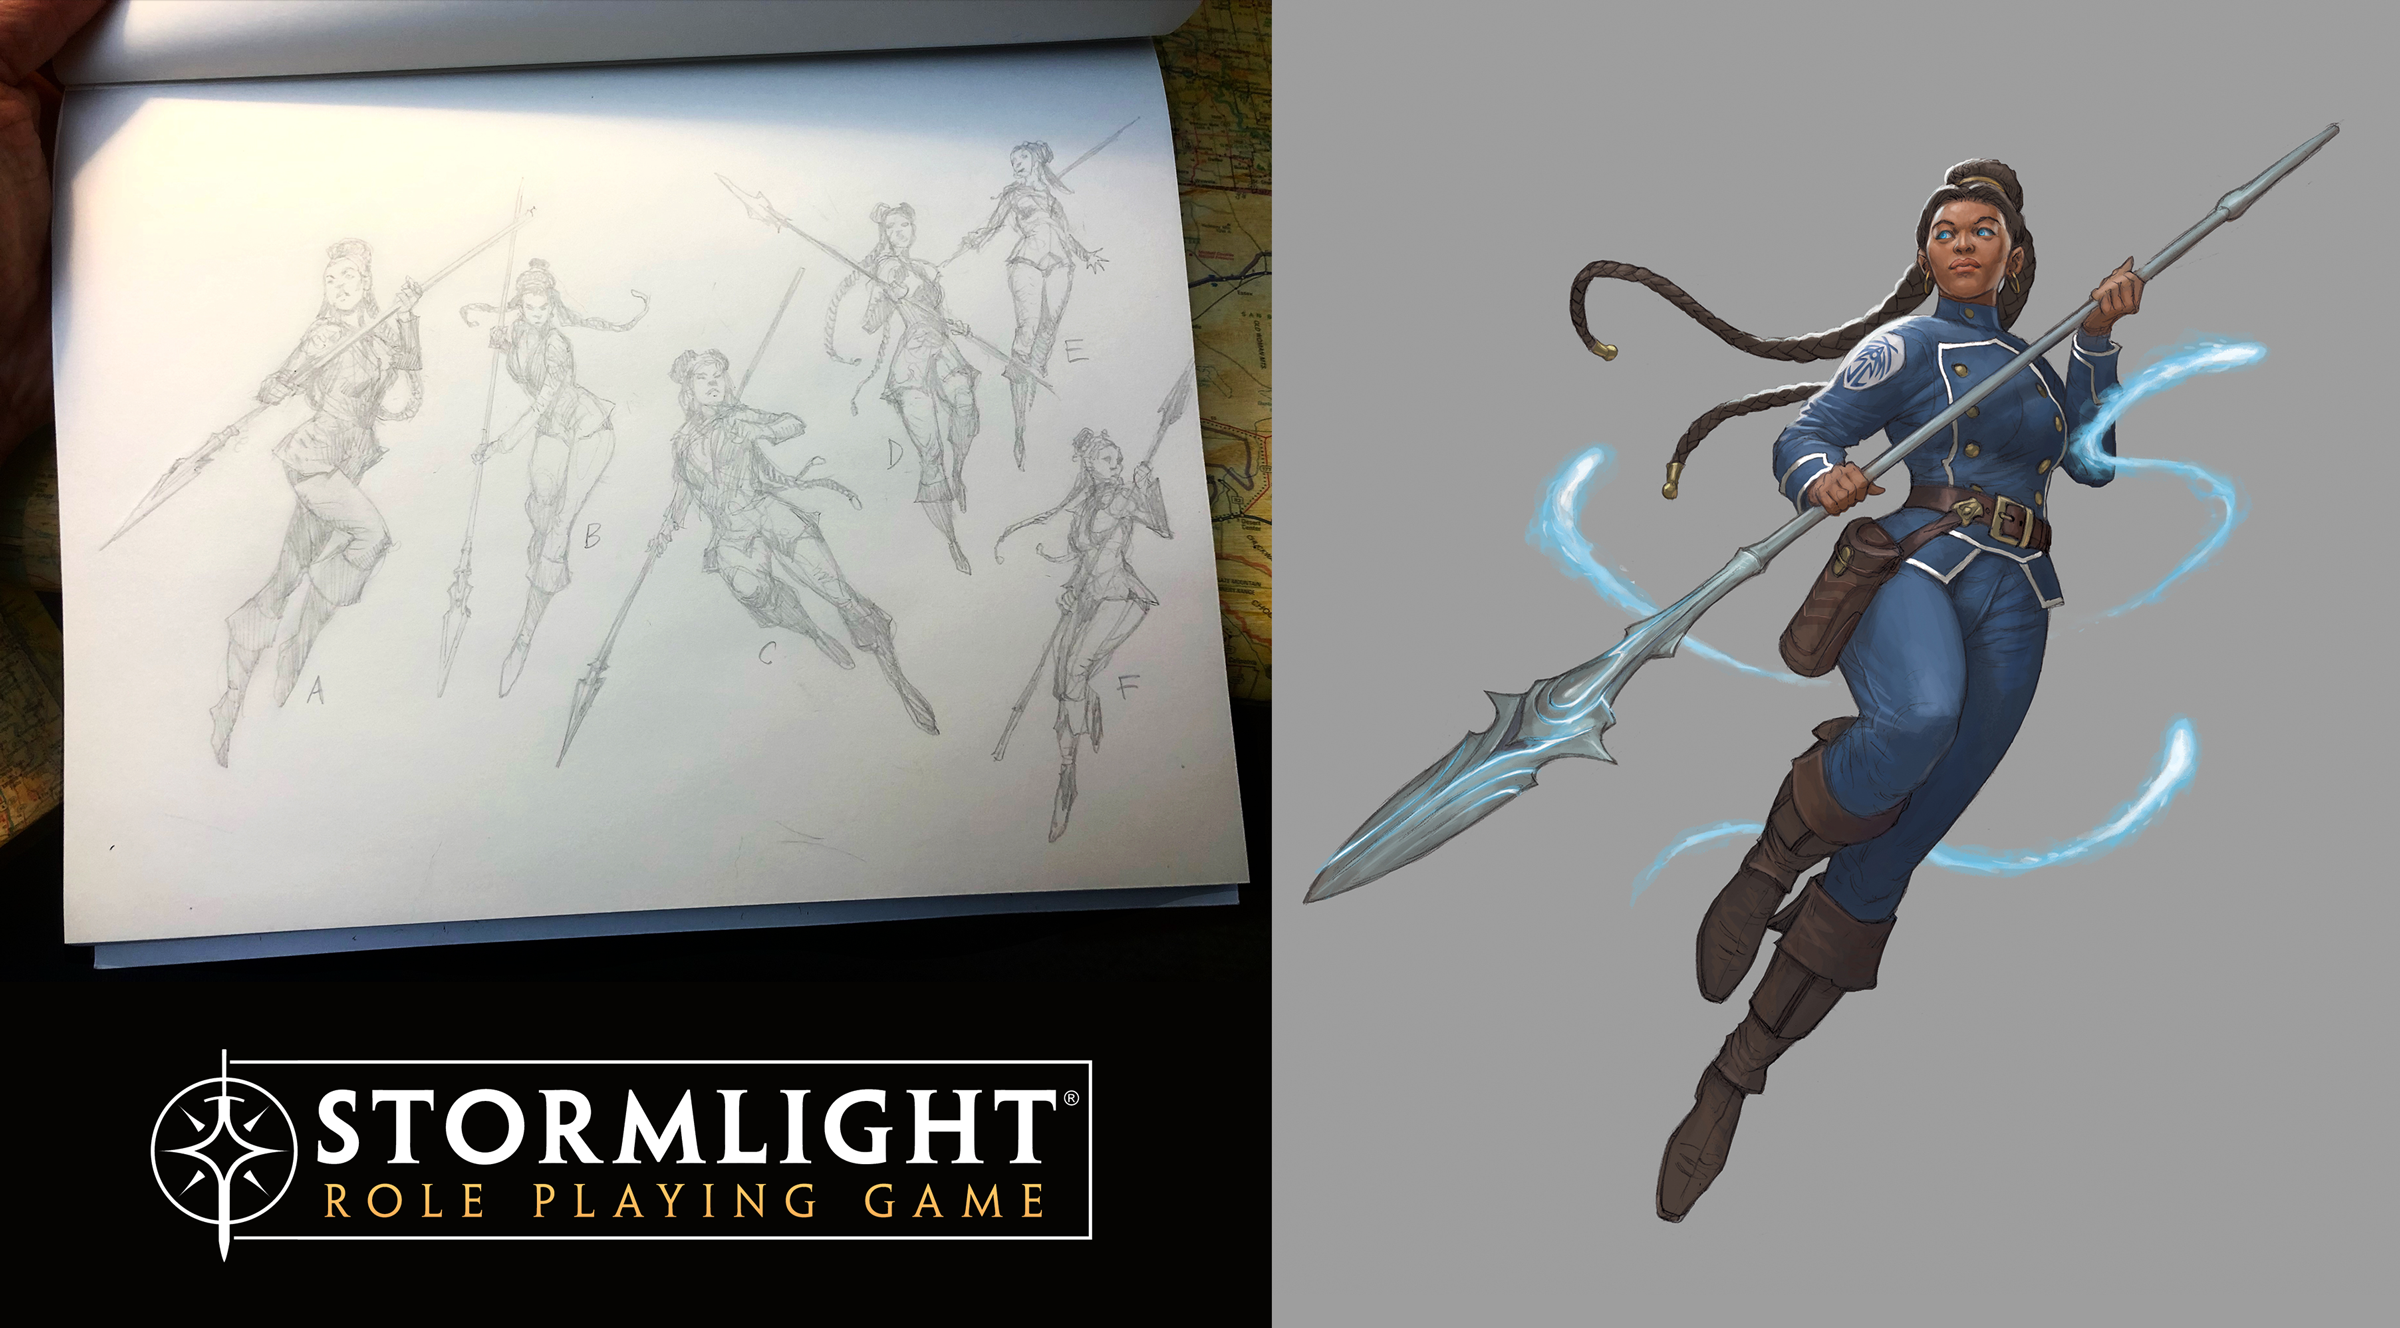 Stormlight Role Playing Game - Diferentes bocetos de poses iniciales para la Corredora del Viento azishiana